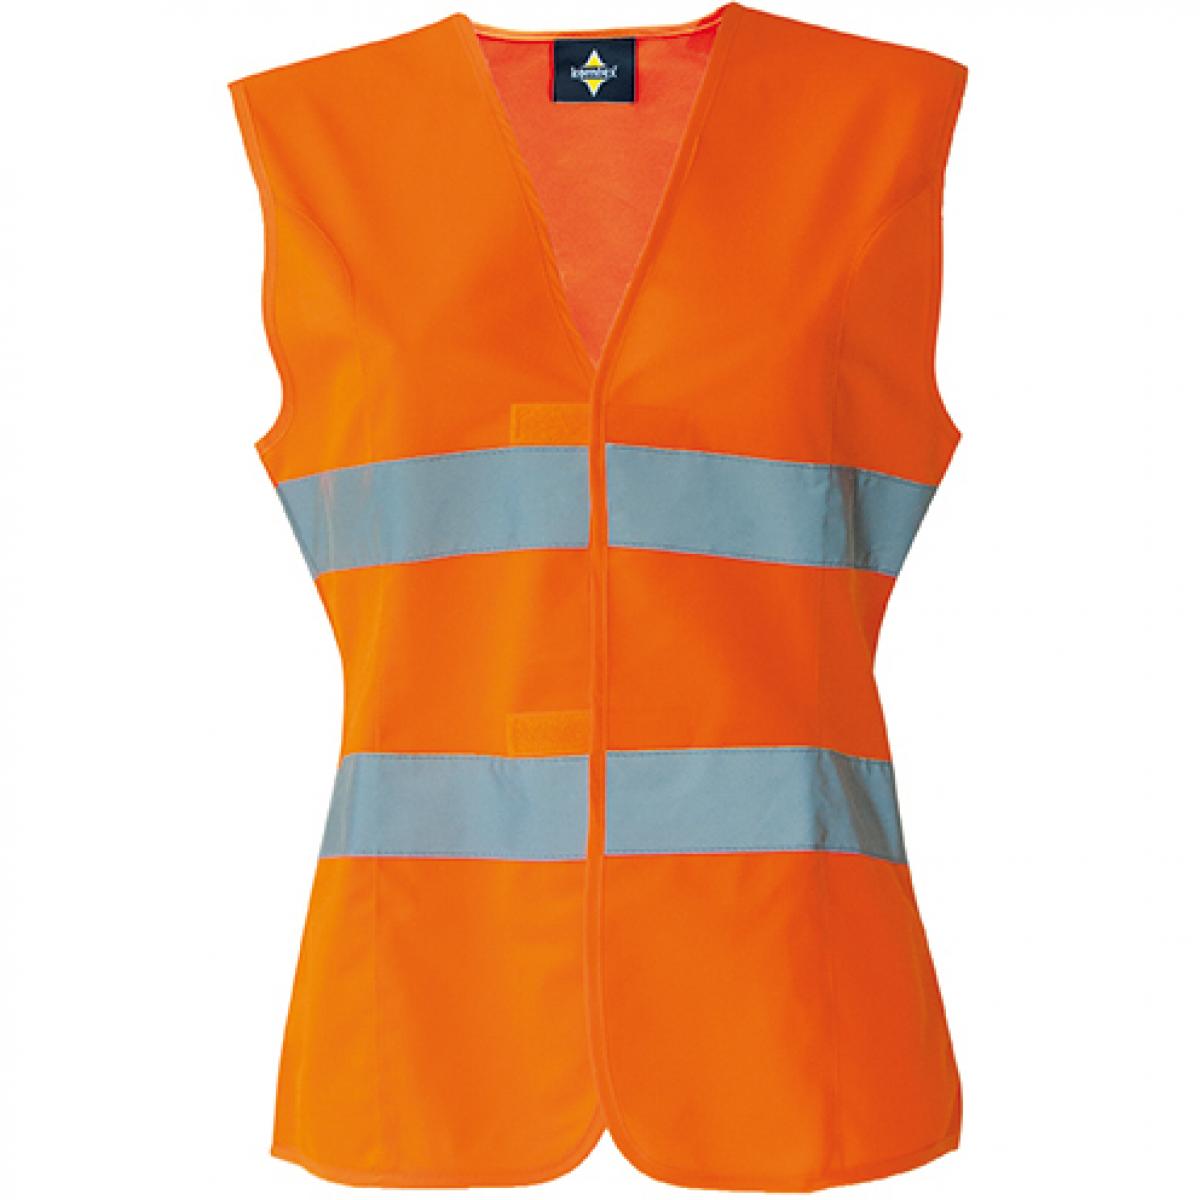 Hersteller: Korntex Herstellernummer: KXF Artikelbezeichnung: Damen Korntex® Sicherheitsweste EN ISO 20471 Farbe: Signal Orange